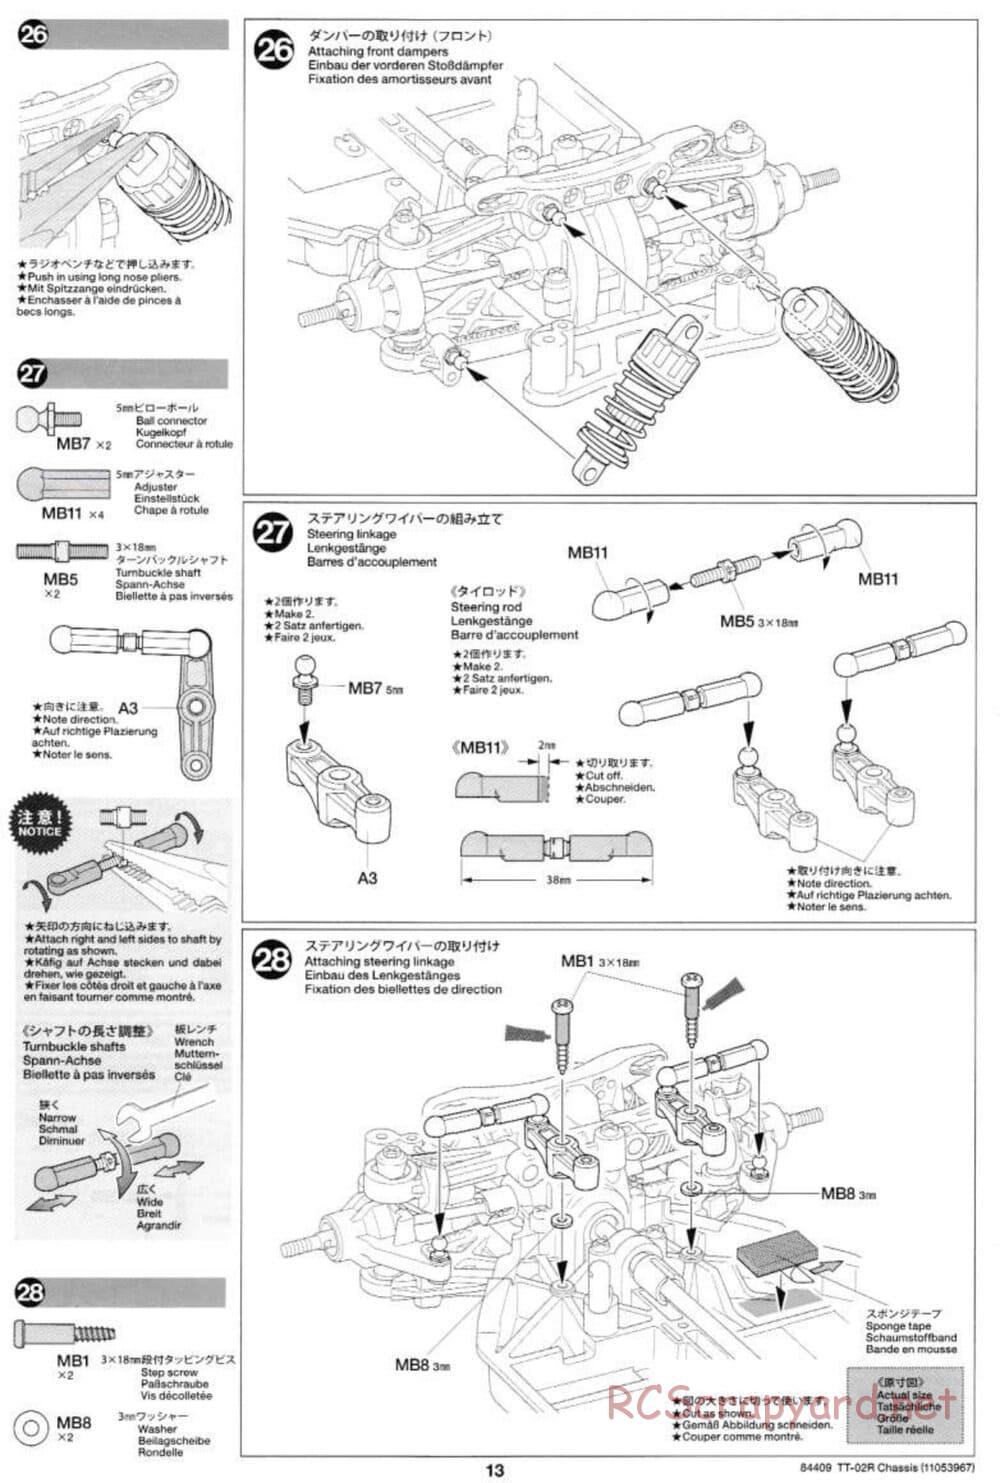 Tamiya - TT-02R Chassis - Manual - Page 13